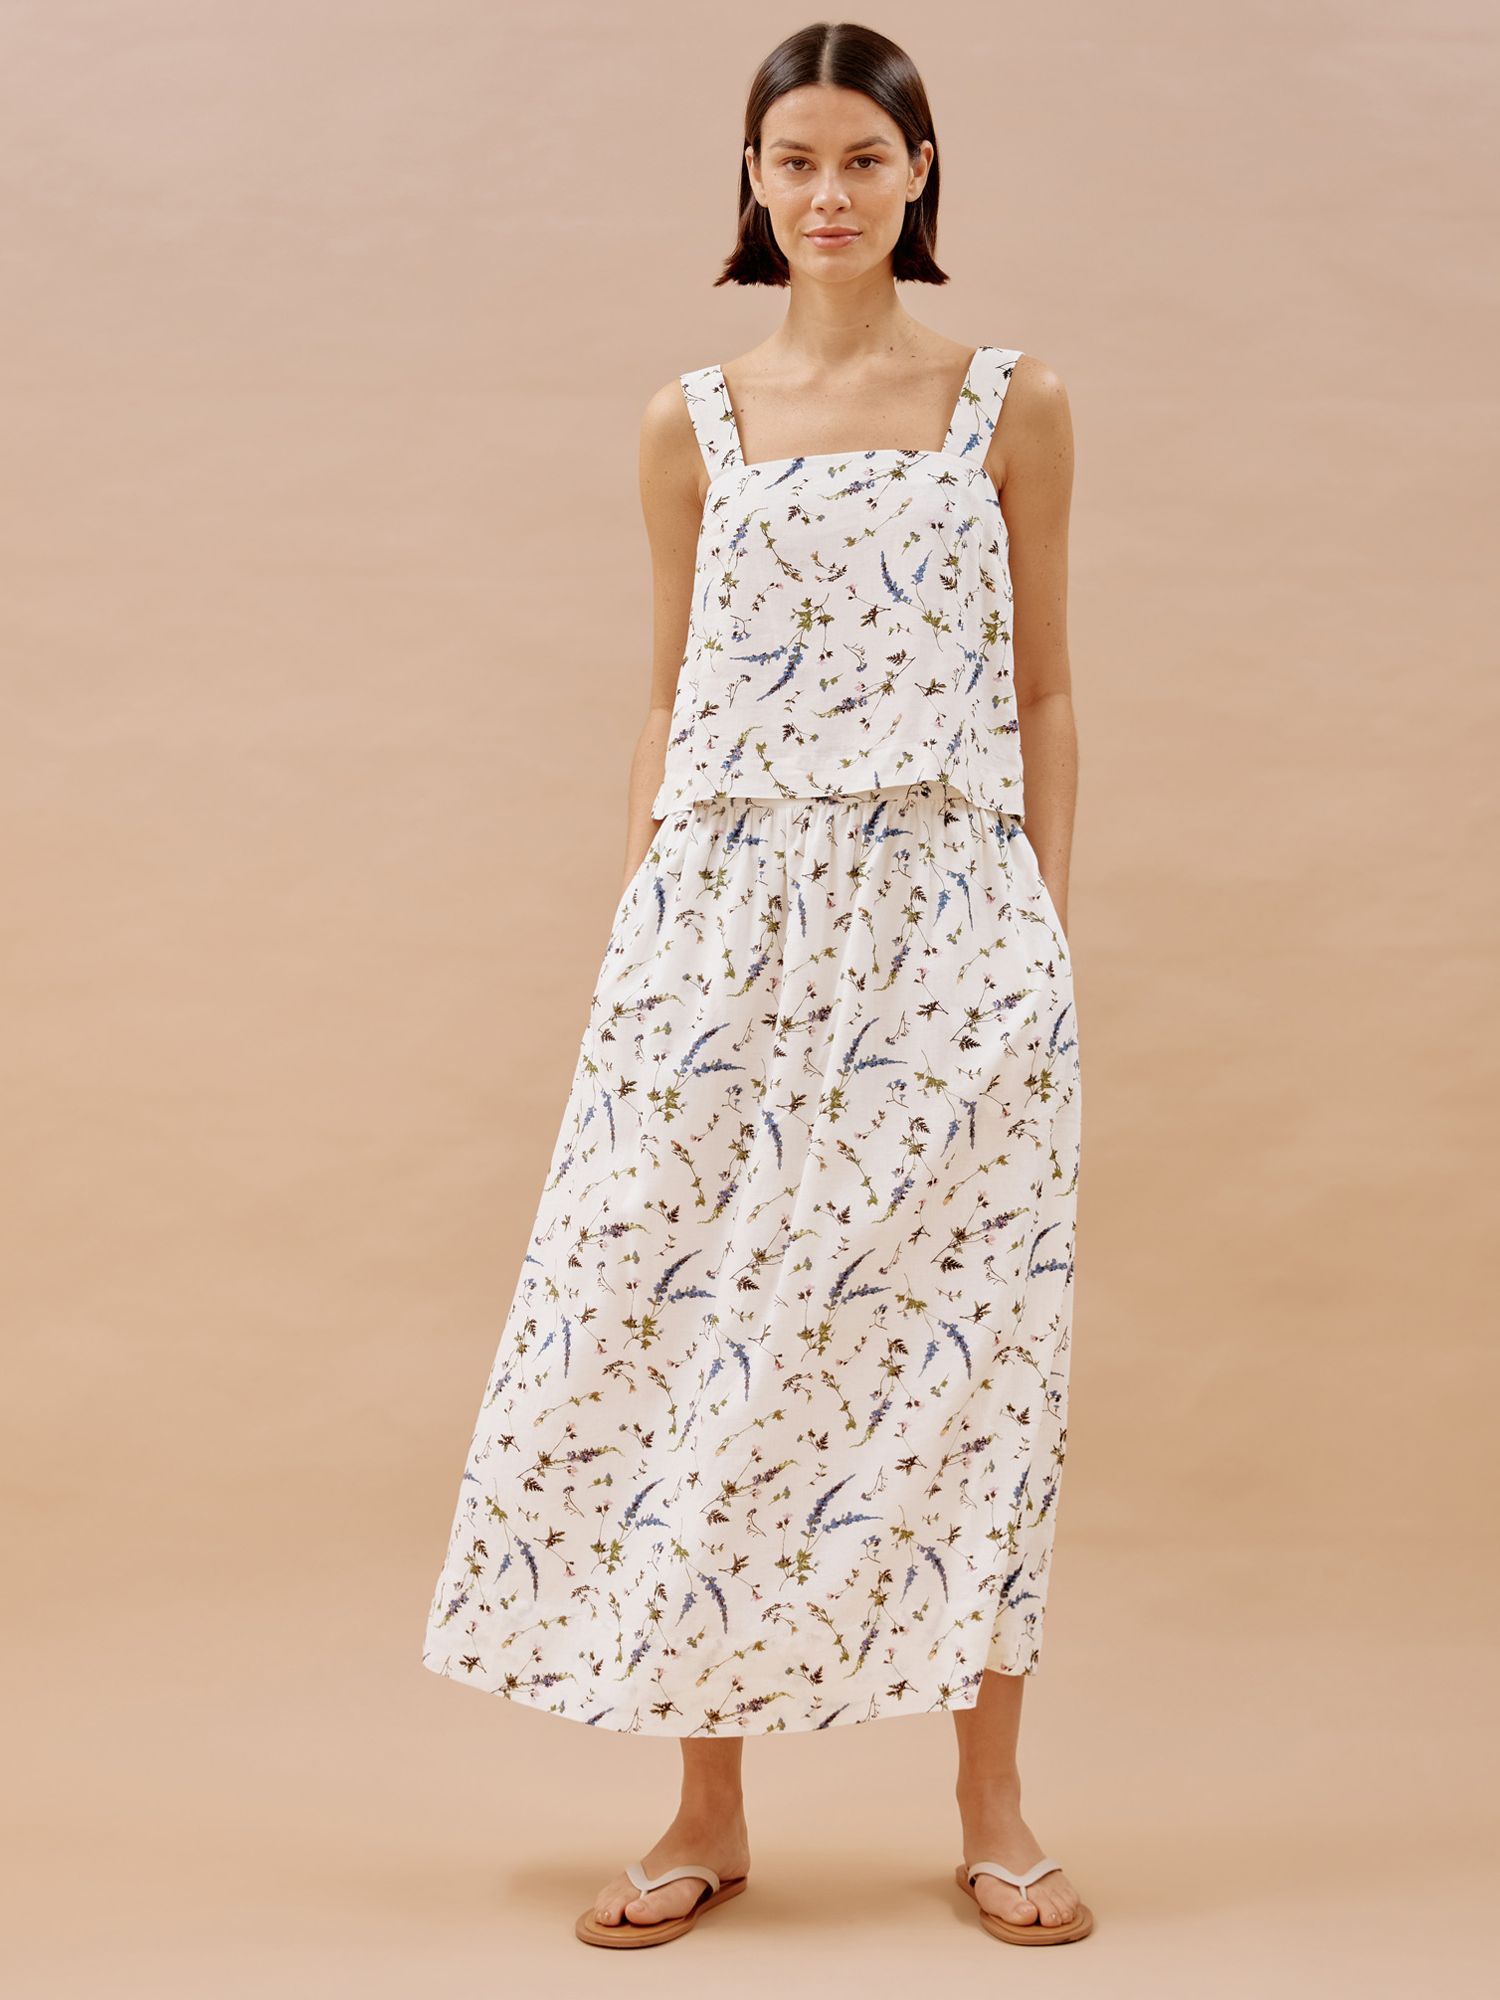 Albaray Sprig Floral Skirt, White/Multi, 8